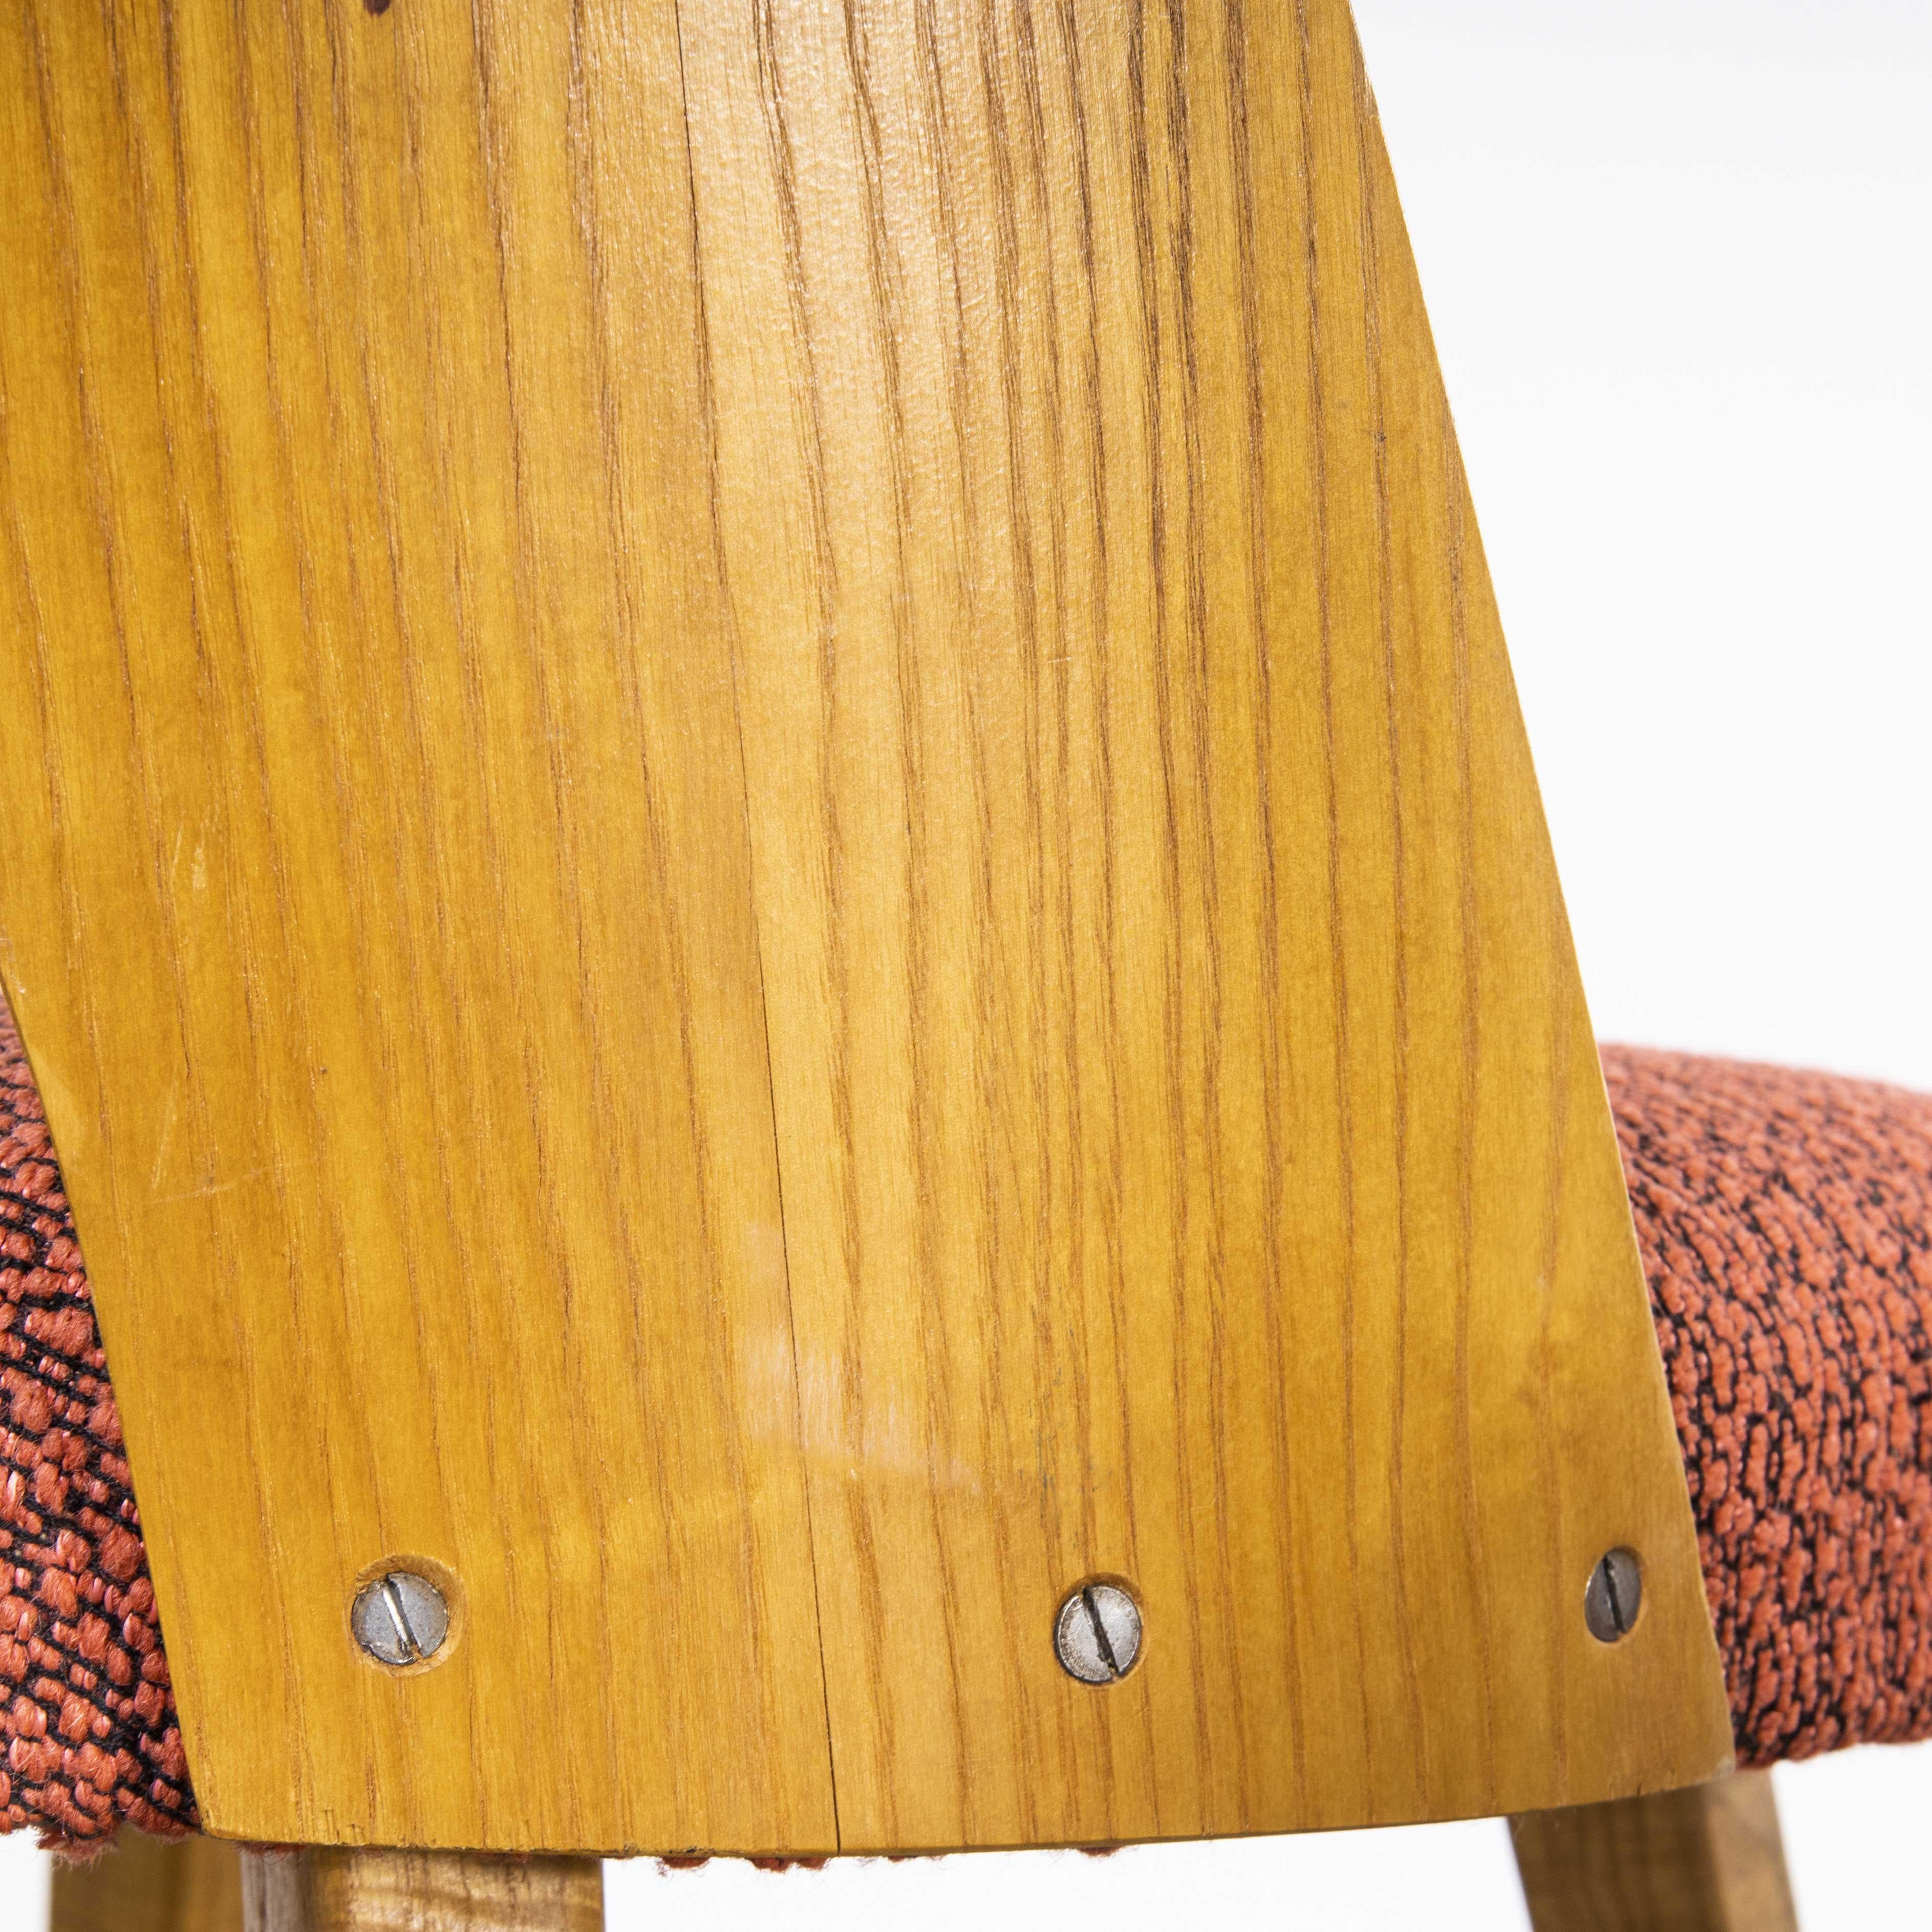 paire de chaises latérales rembourrées des années 1950 - Oswald Haerdtl Modèle 515
paire de chaises latérales rembourrées des années 1950 - Oswald Haerdtl Modèle 515. Ces chaises ont été produites par la célèbre entreprise tchèque Ton, qui produit